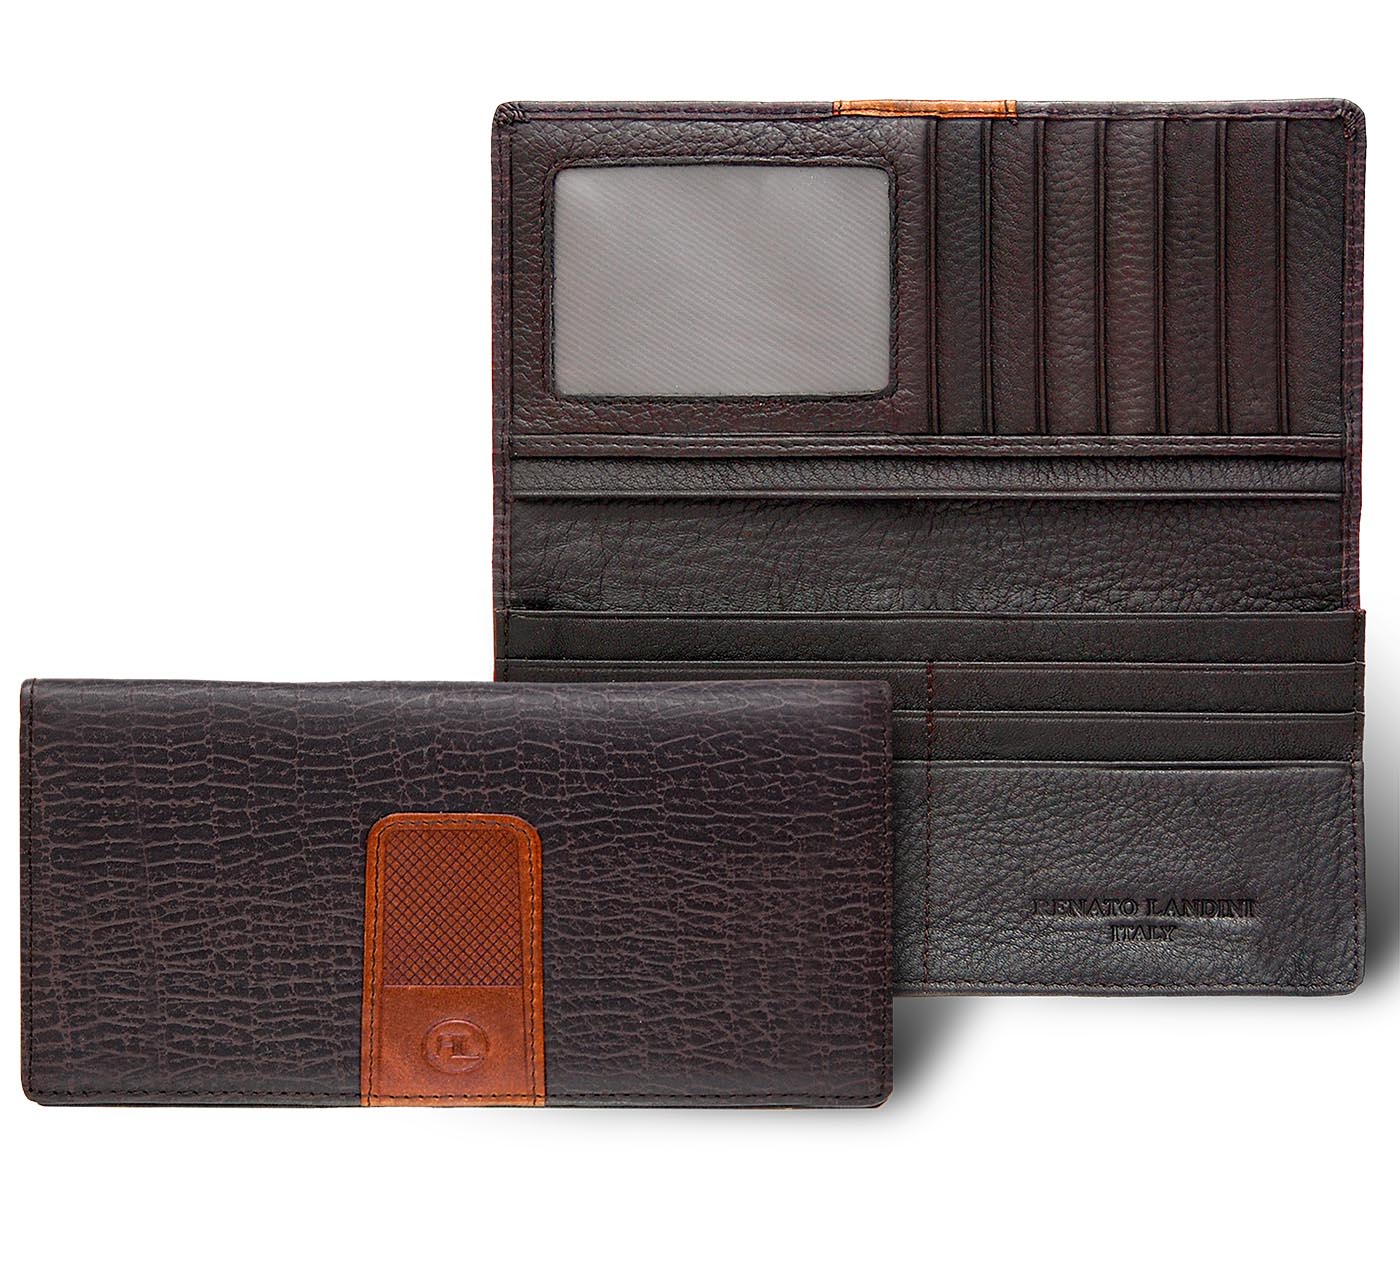 RENATO LANDINI Pen + Wallet Set + Cufflink + Key-Holder